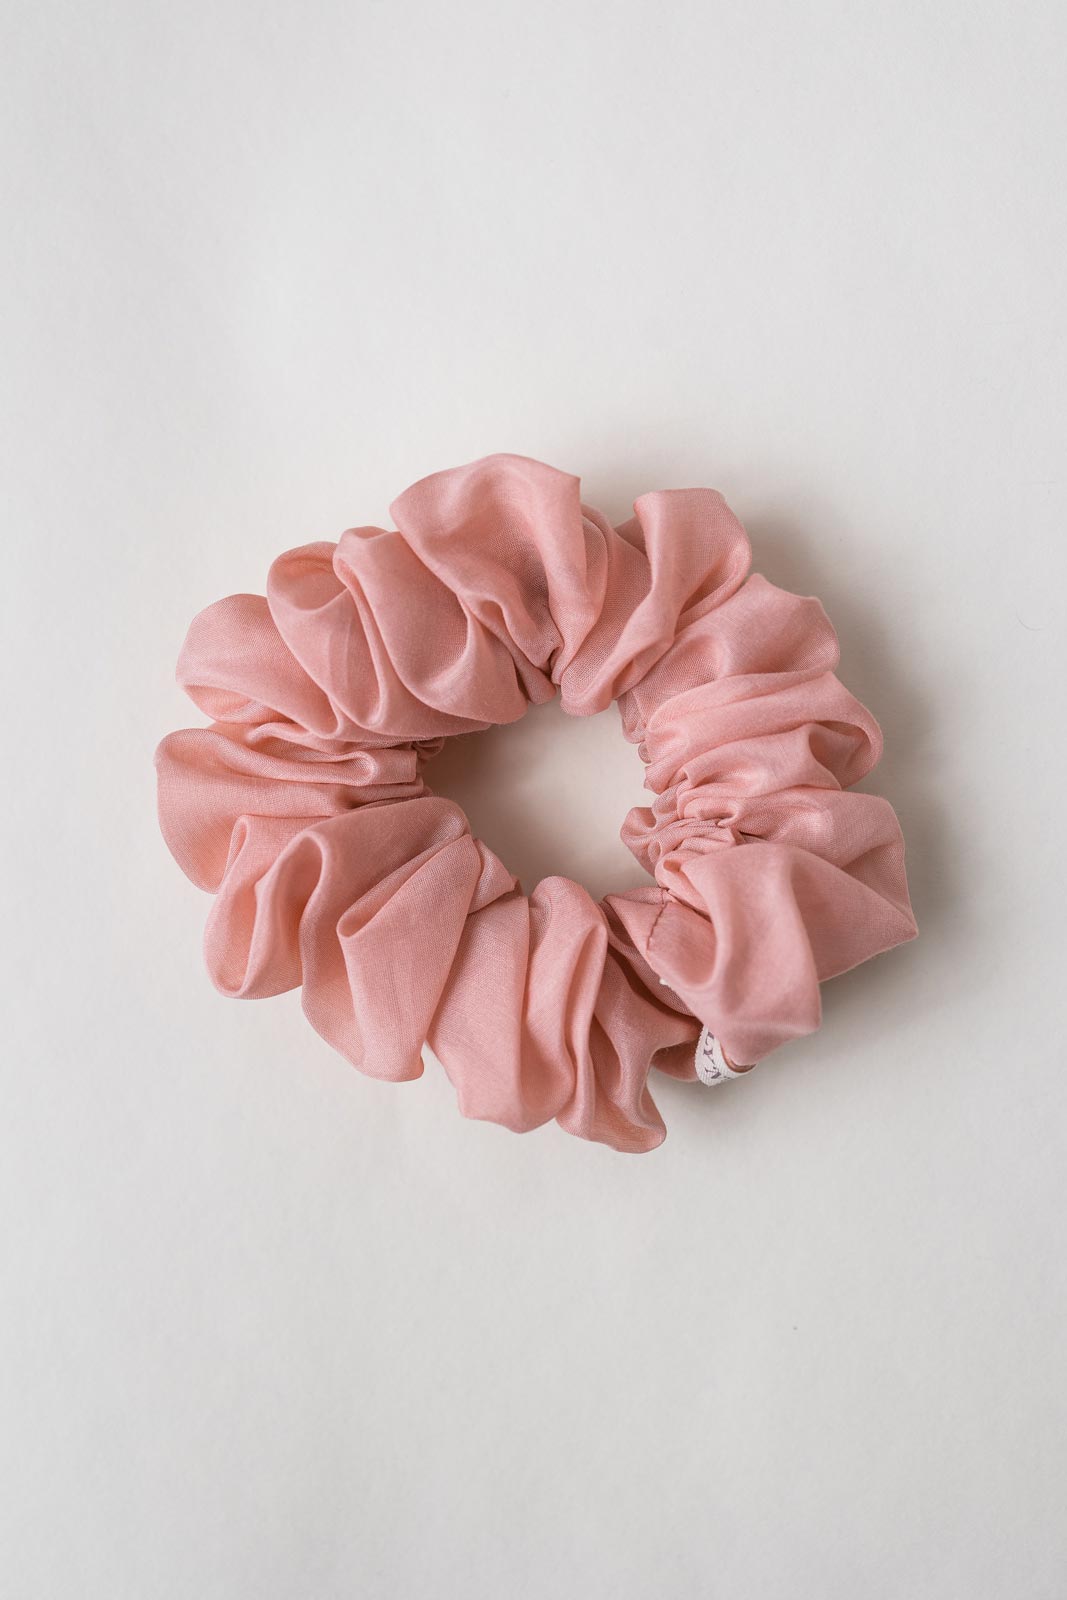 Scrunchie (Cotton-Silk) – Haargummi aus Baumwolle und Seide - Baumwollseide CottonRosa / M